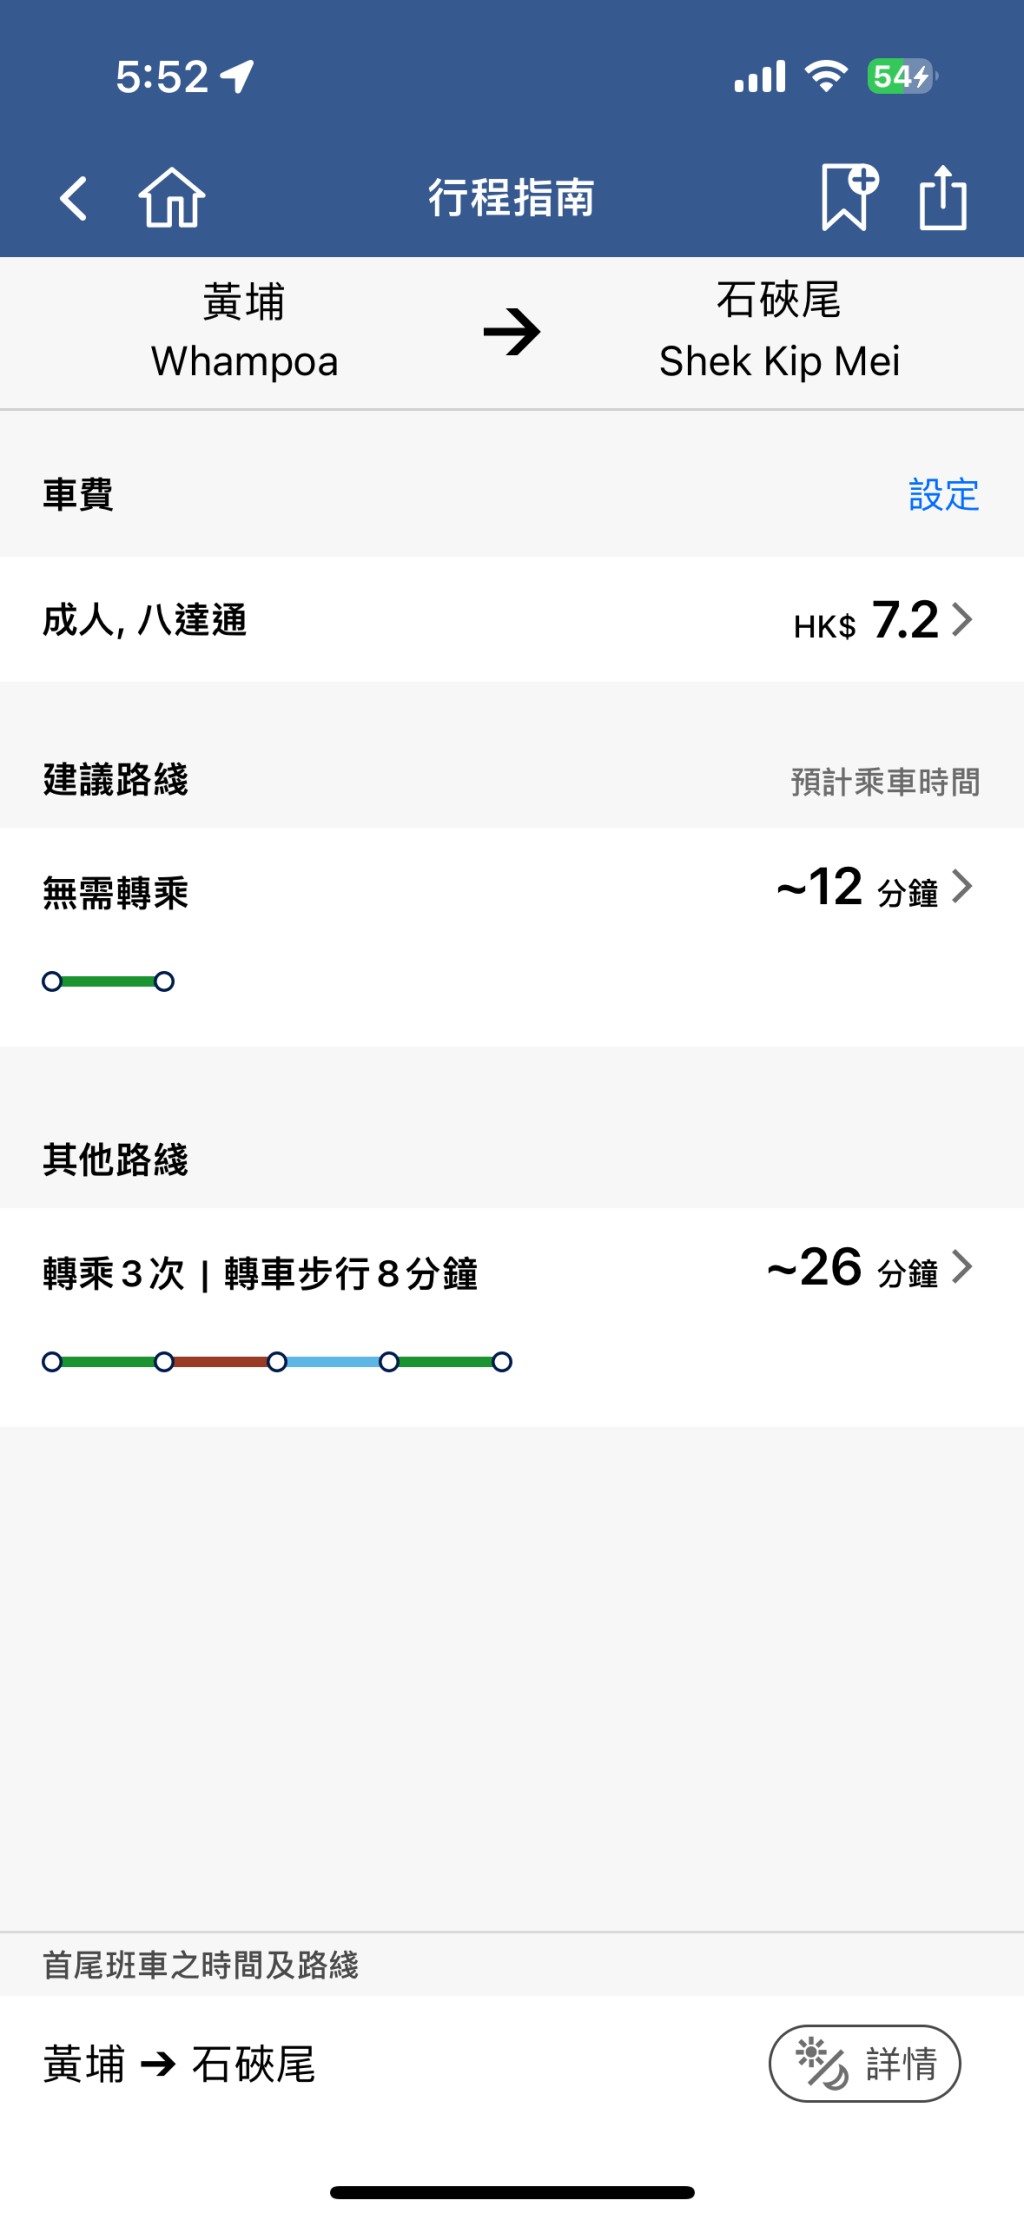 乘客若想从黄埔站去石硖尾站，根据港铁APP行程指南，原本不用转车，仅需时12分钟。